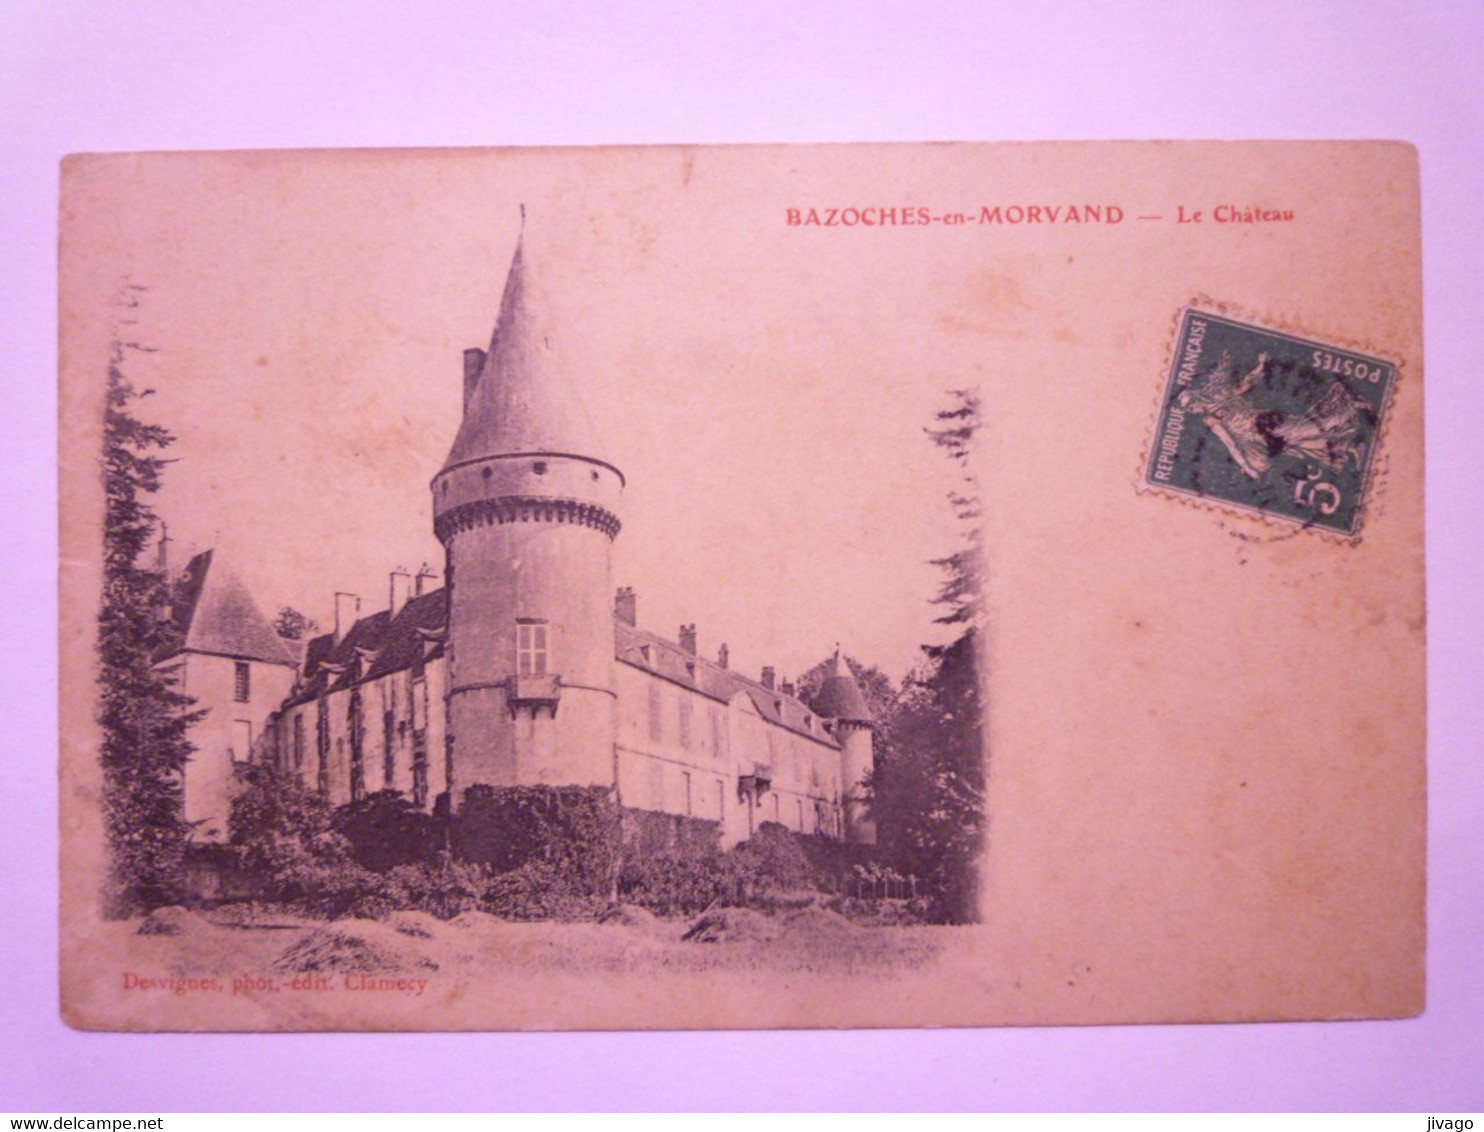 2021 - 3777  BAZOCHES-en-MORVAN  (Nièvre)  :  Le CHÂTEAU  1910   XXX - Bazoches